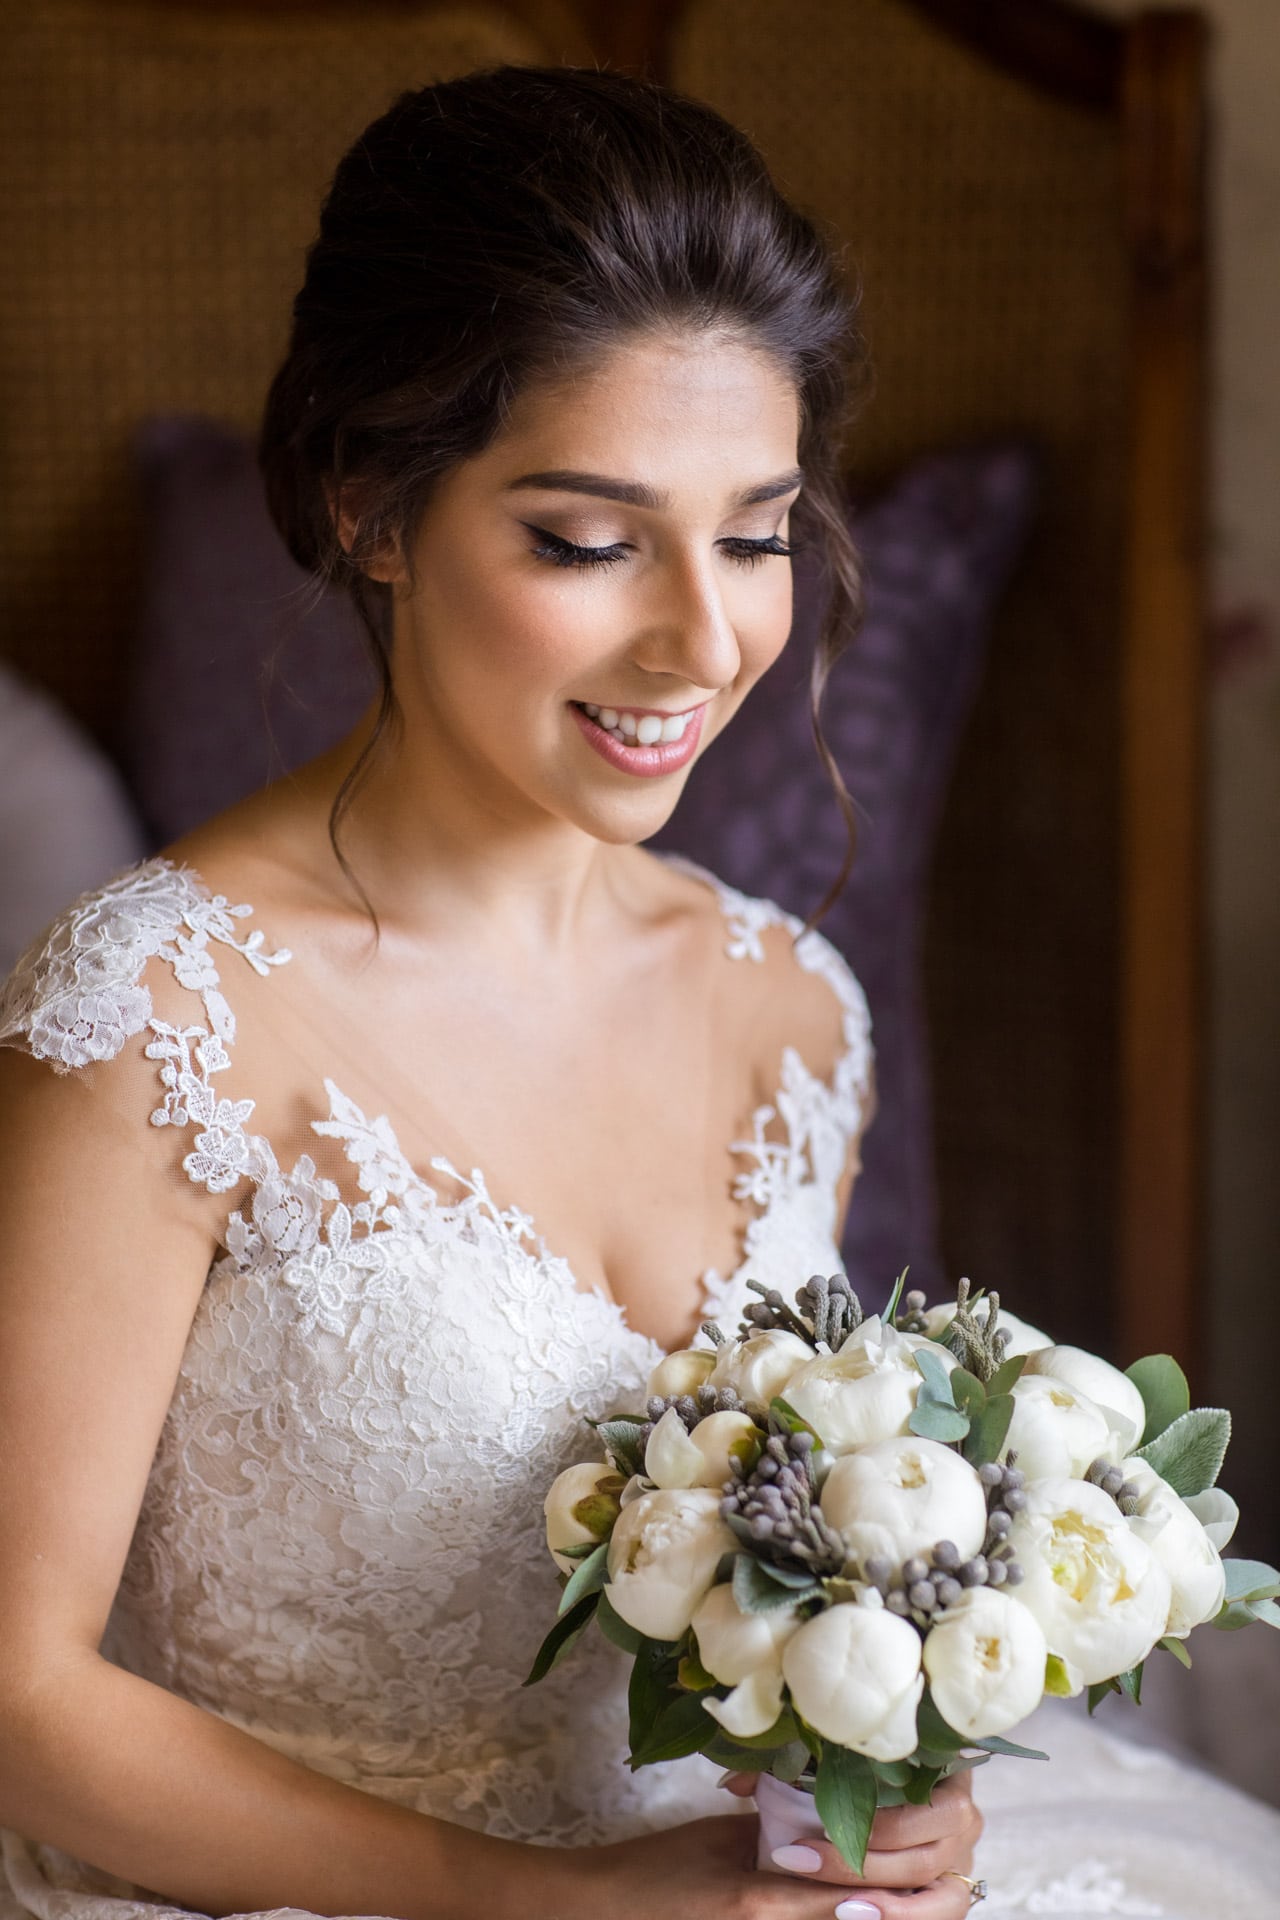 stunning Greek bride portrait